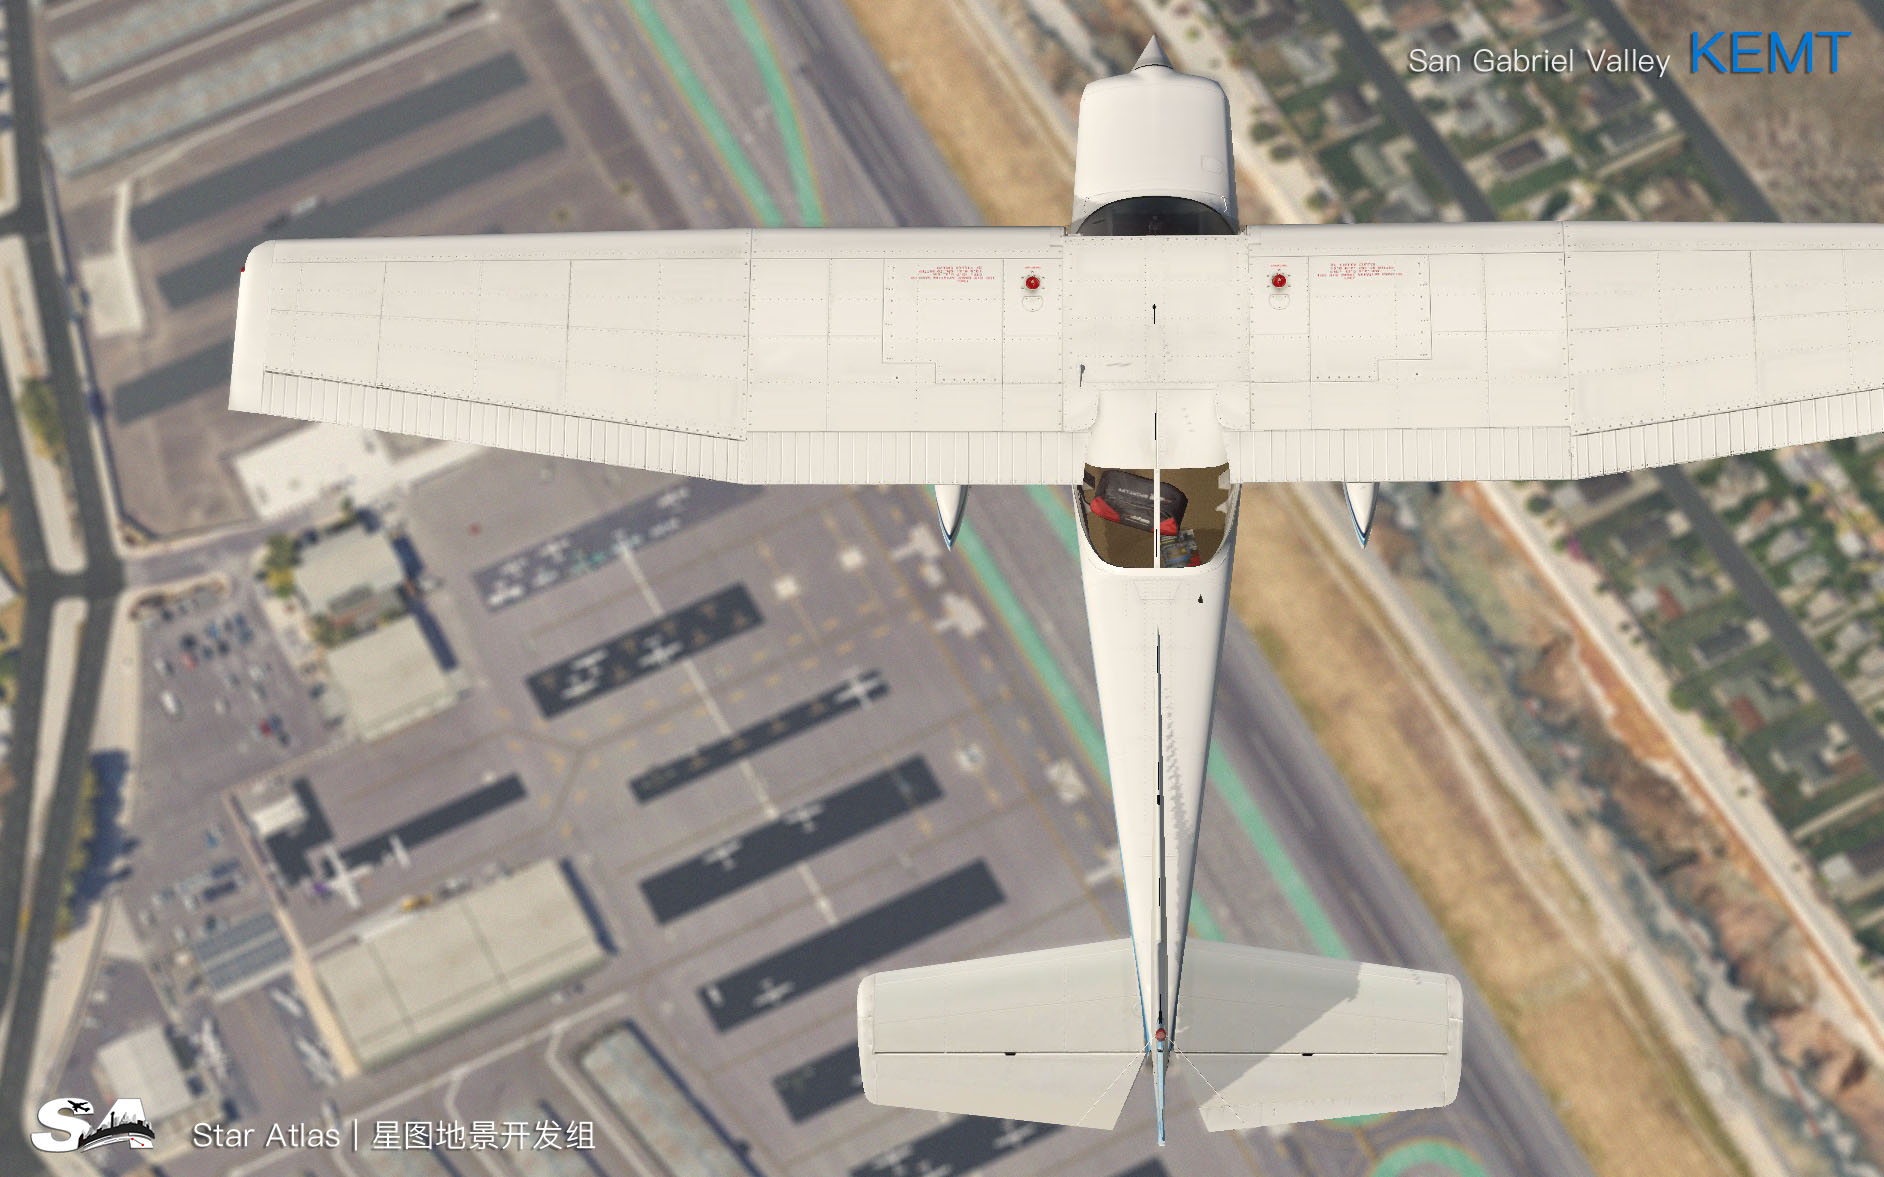 【X-Plane】KEMT-圣盖博谷机场 HD 1.0-5204 